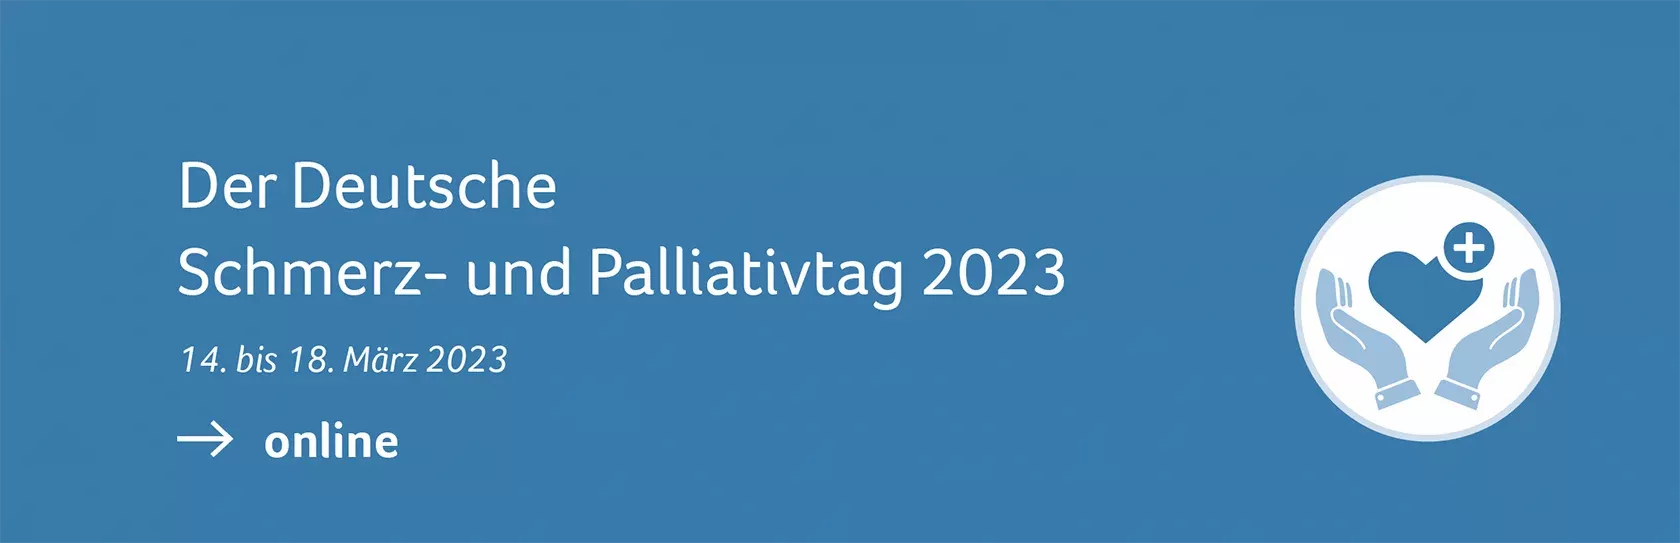 Banner vom Deutschen Schmerz- und Palliativtag 2023